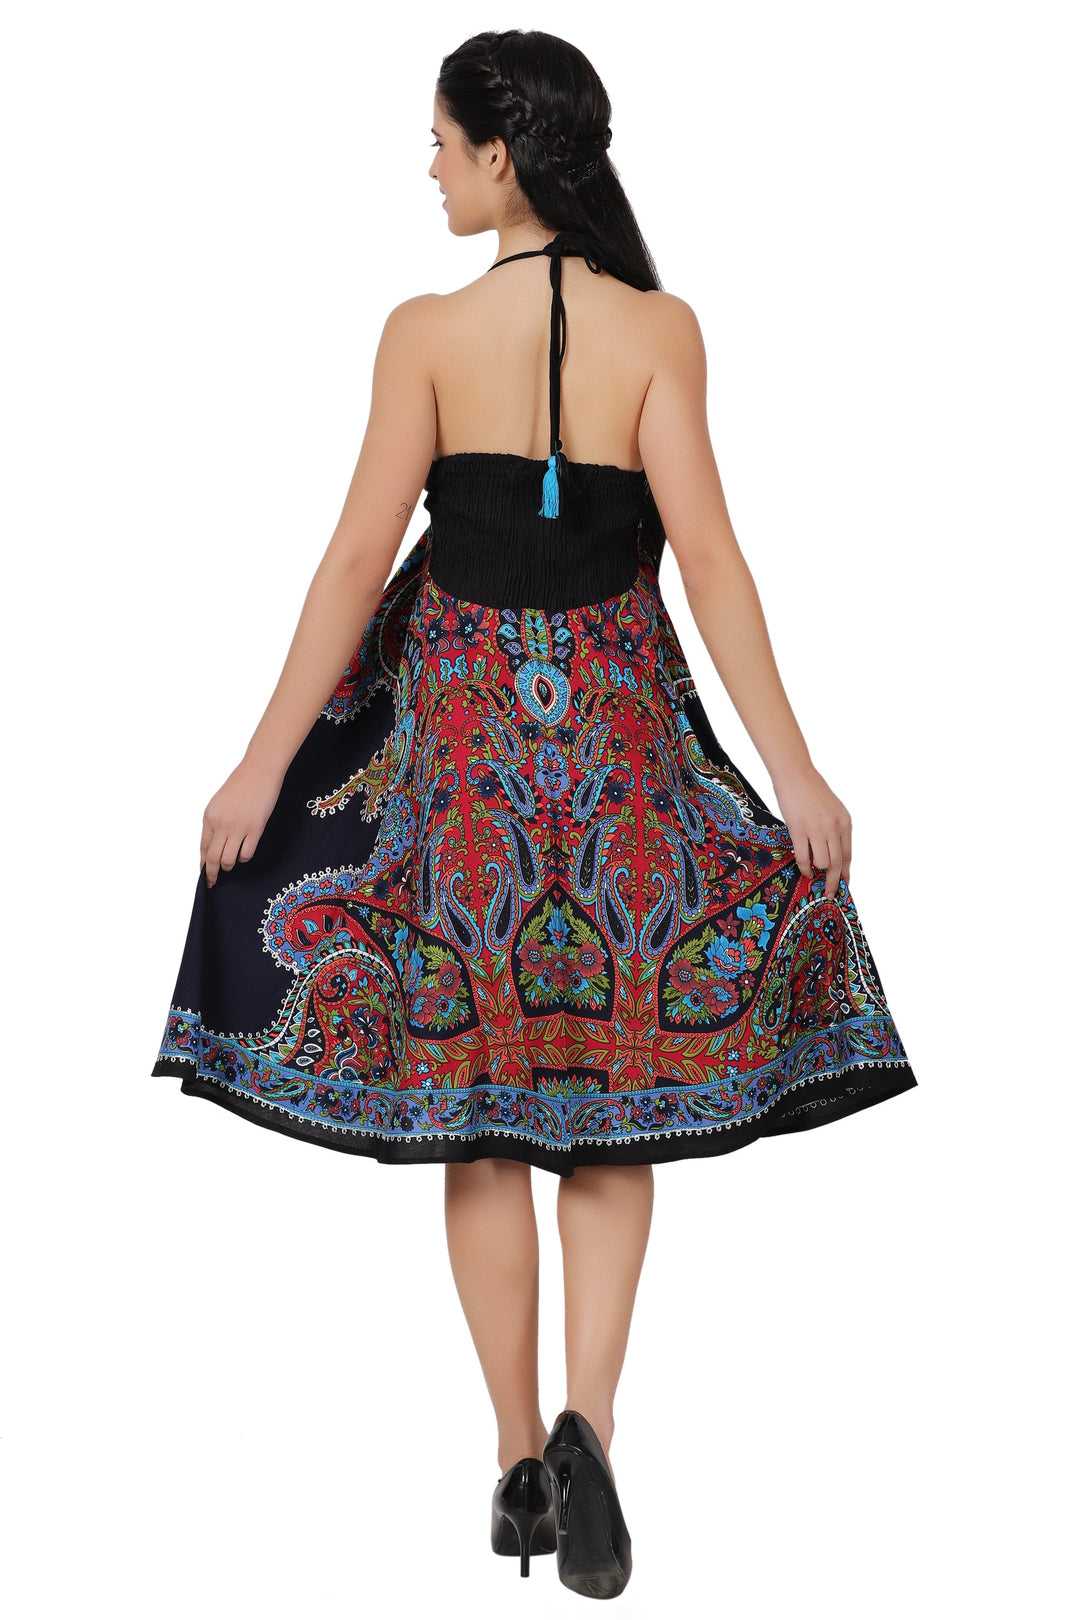 Halter Top Elastic Back Mid-Length Batik Dress PD-9706